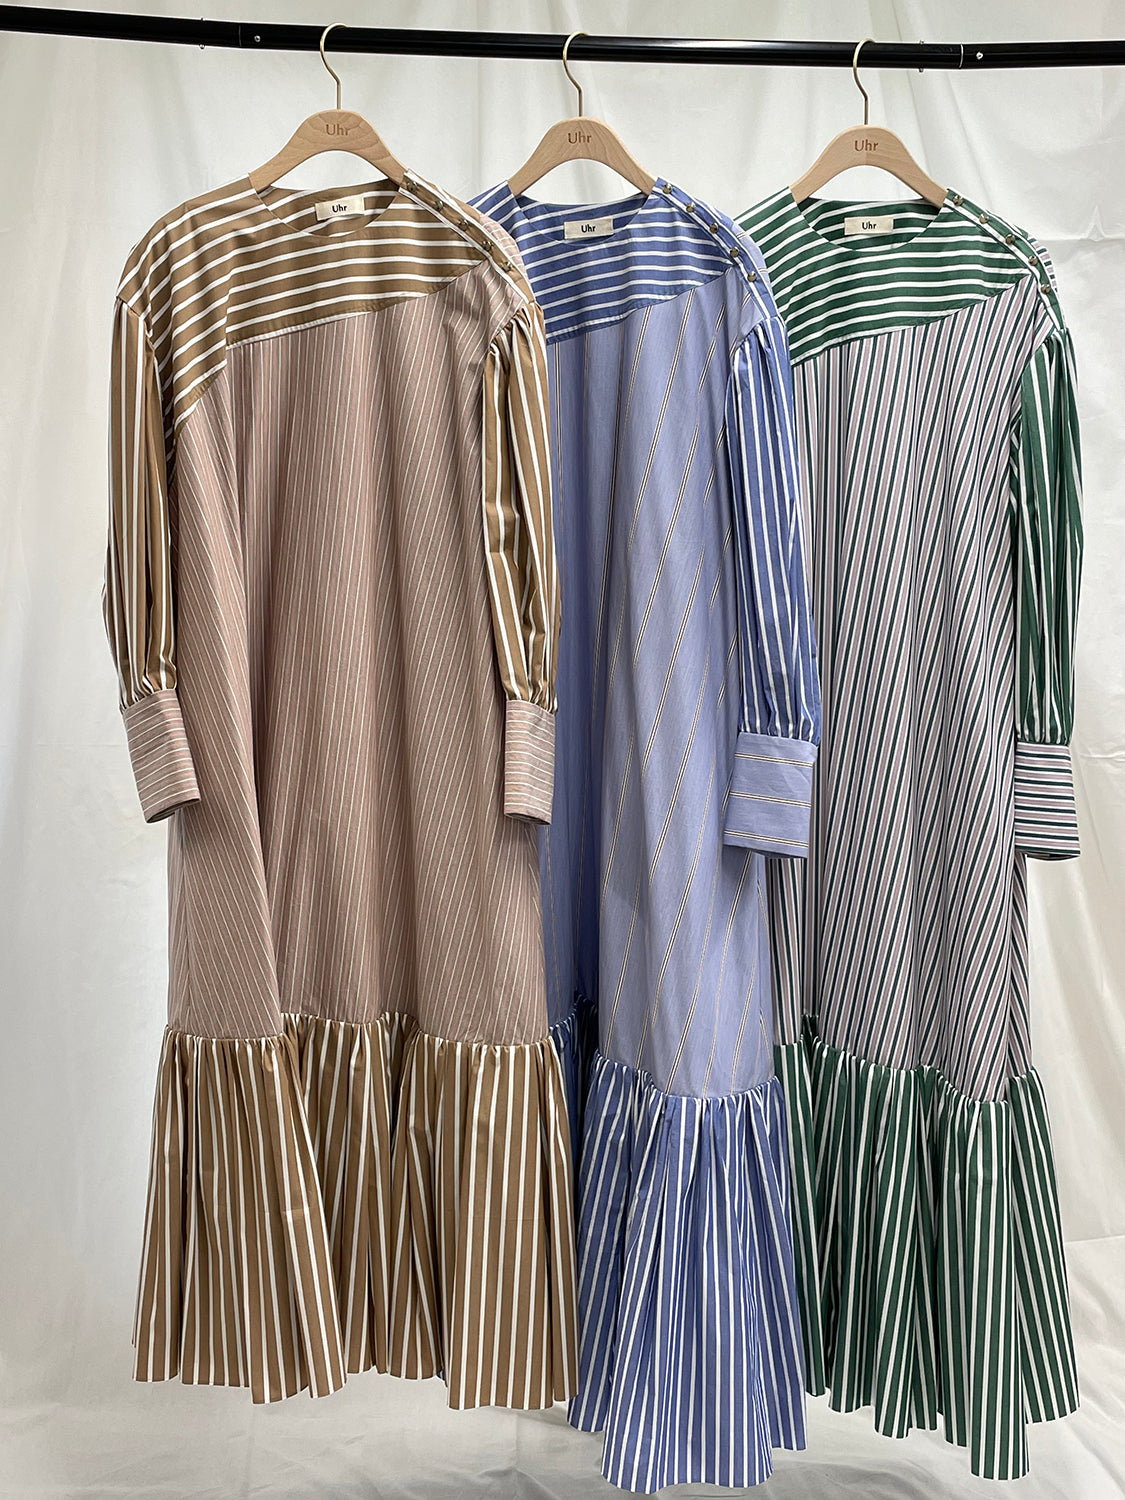 Crazy Stripe Dress – Uhr Online store